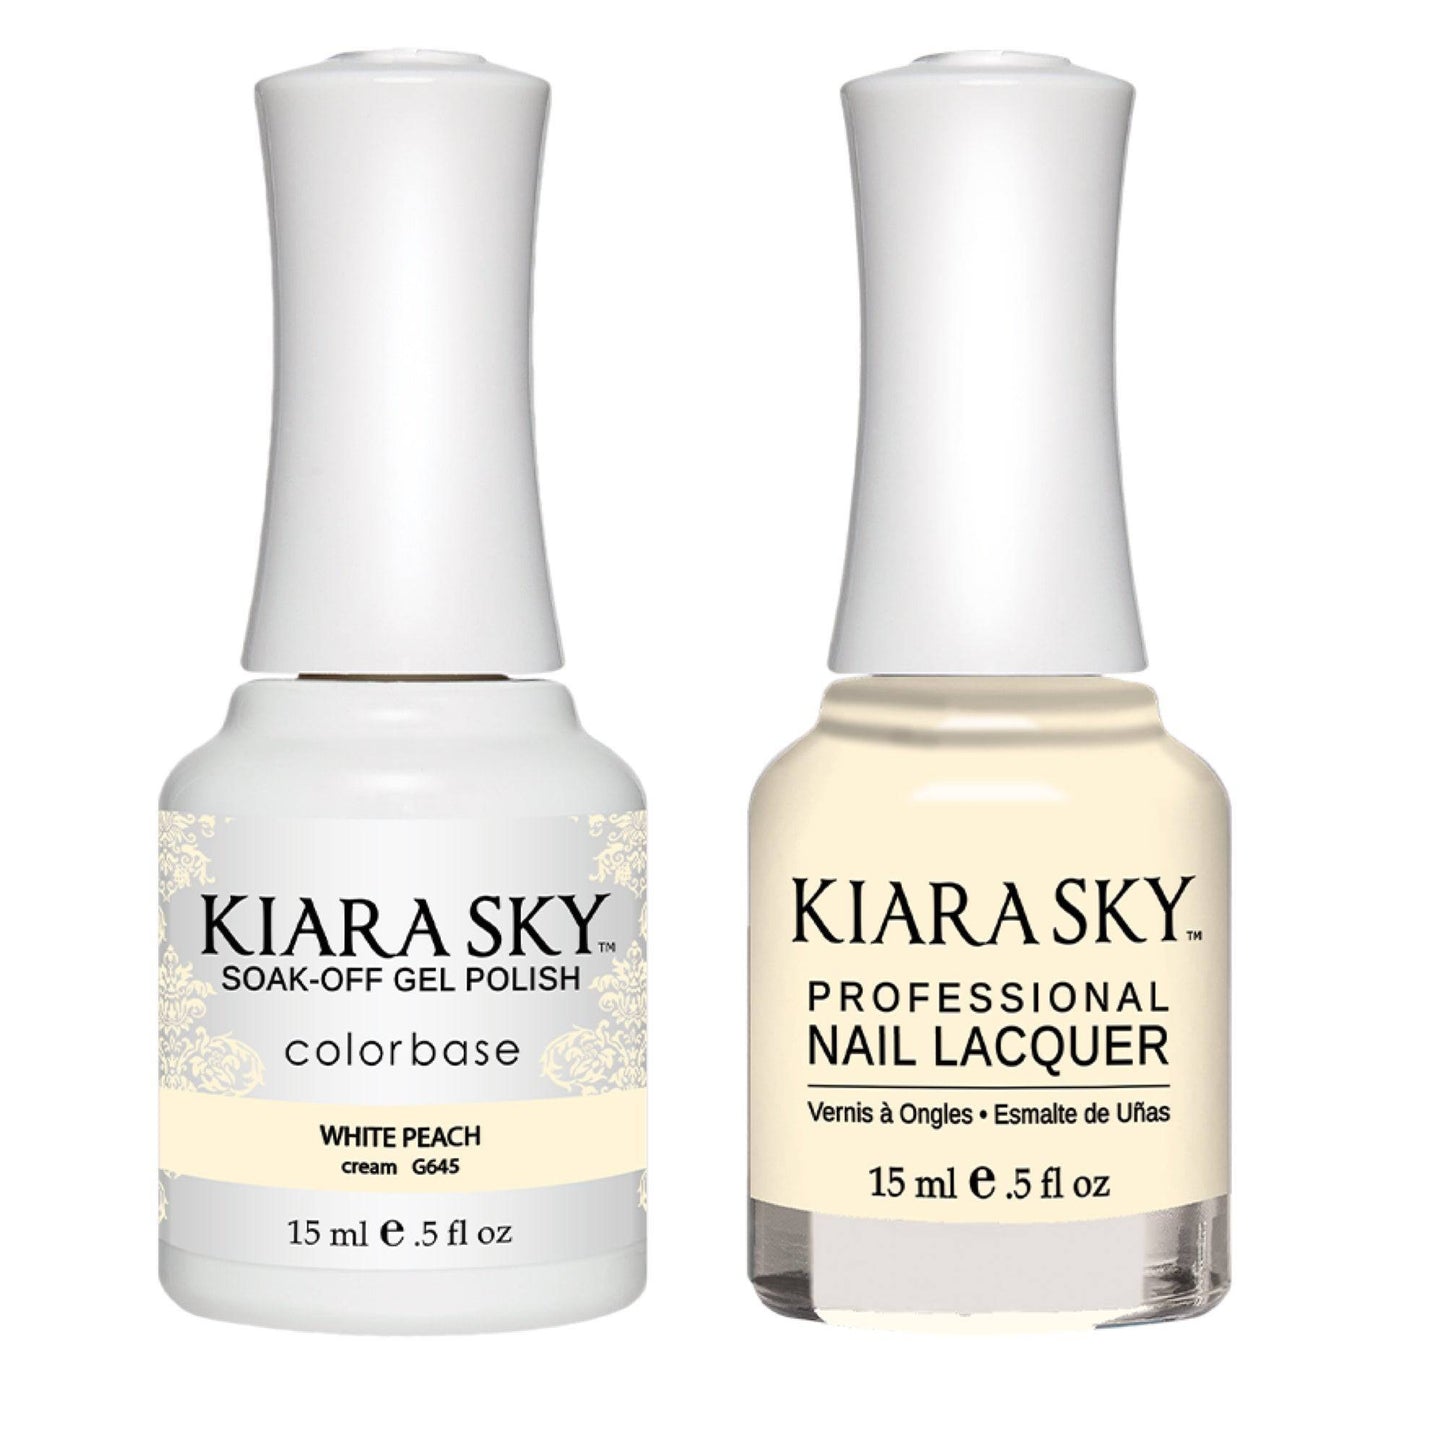 Kiara Sky Gel + Matching Lacquer - White Peach #645 - Universal Nail Supplies